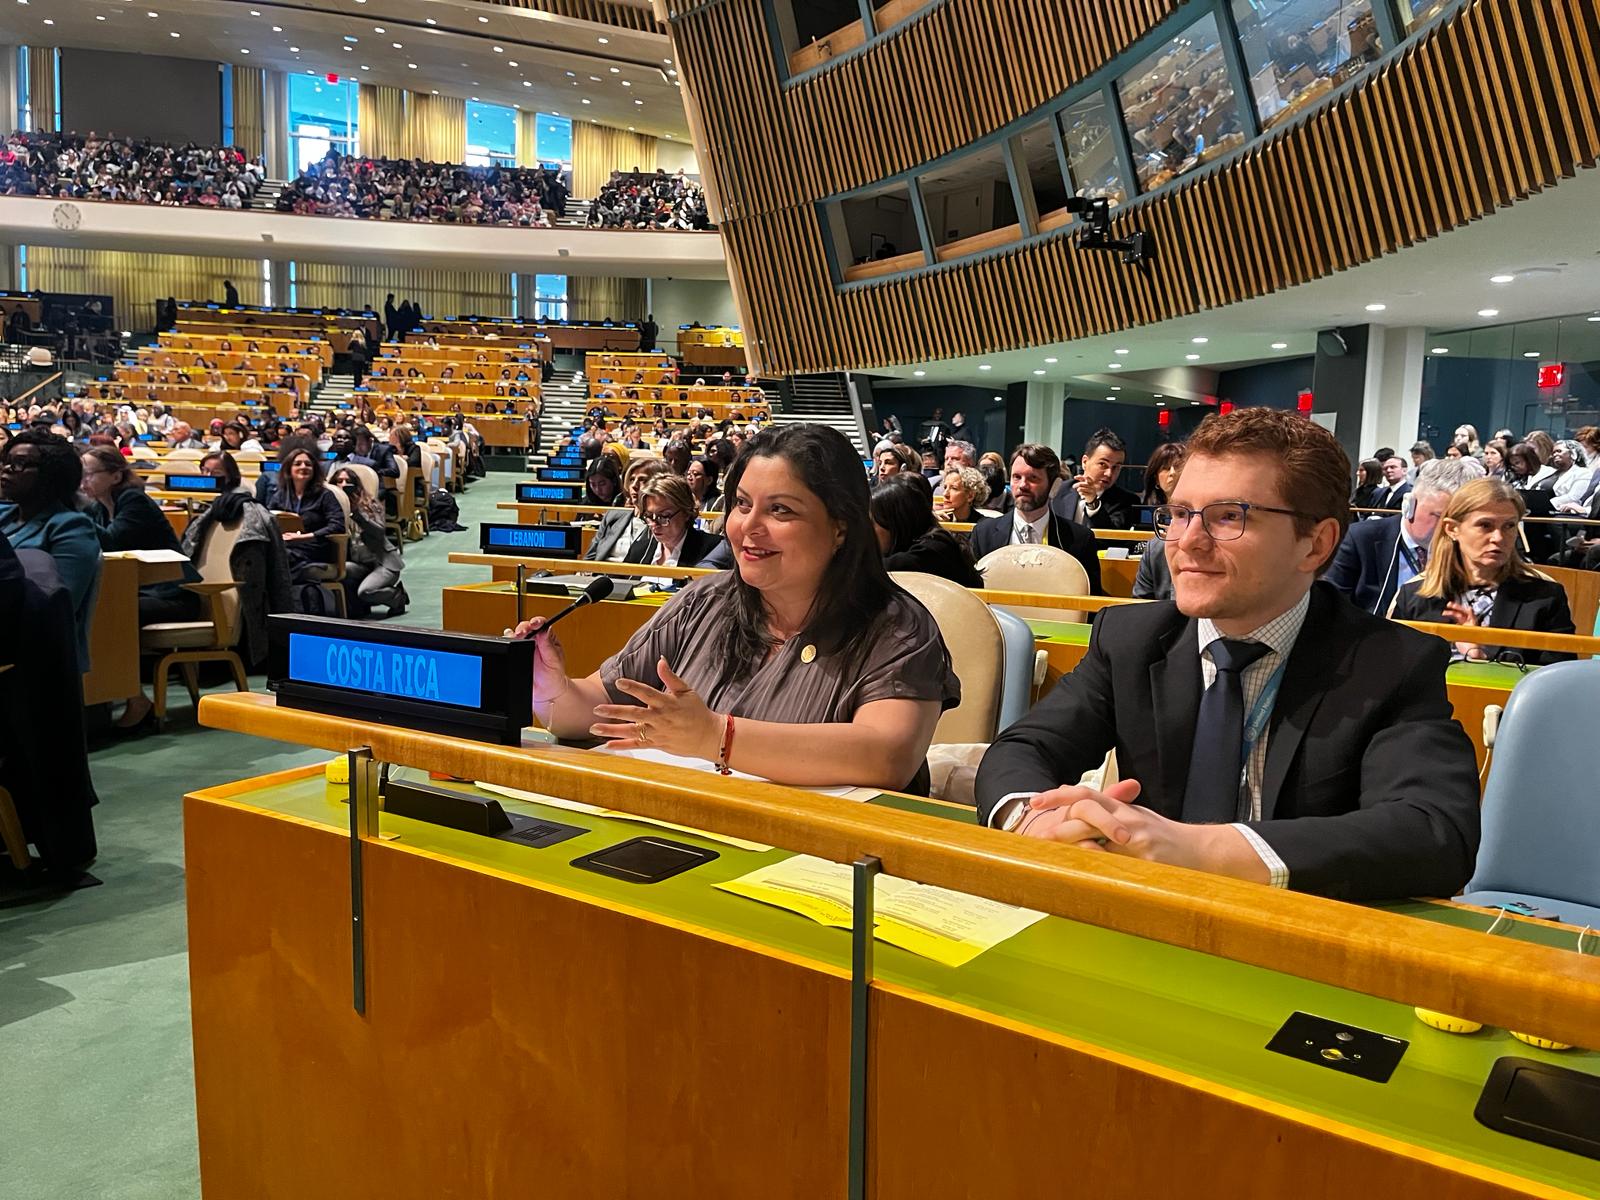 exagésima octava sesión de la Comisión sobre la Condición Jurídica y Social de la Mujer de las Naciones Unidas, donde participa la Ministra de la Condición de la Mujer, Cindy Quesada Hernández.